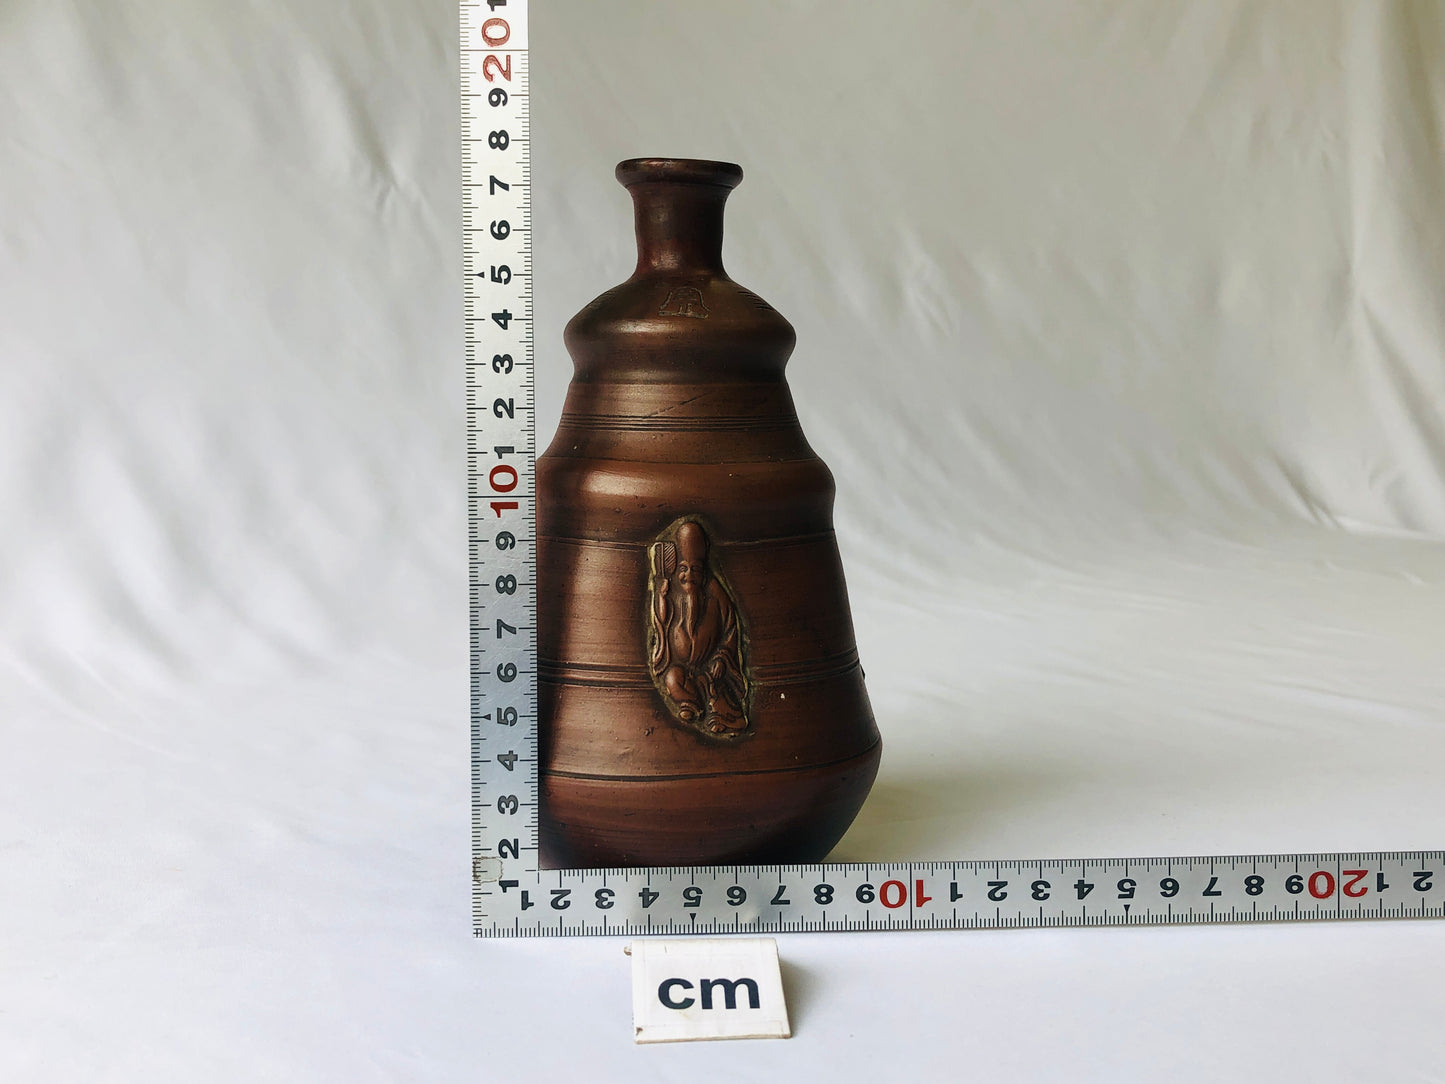 Y4608 CHOUSHI Bizen-ware Hotei Tokkuri sake bottle Japan antique tableware